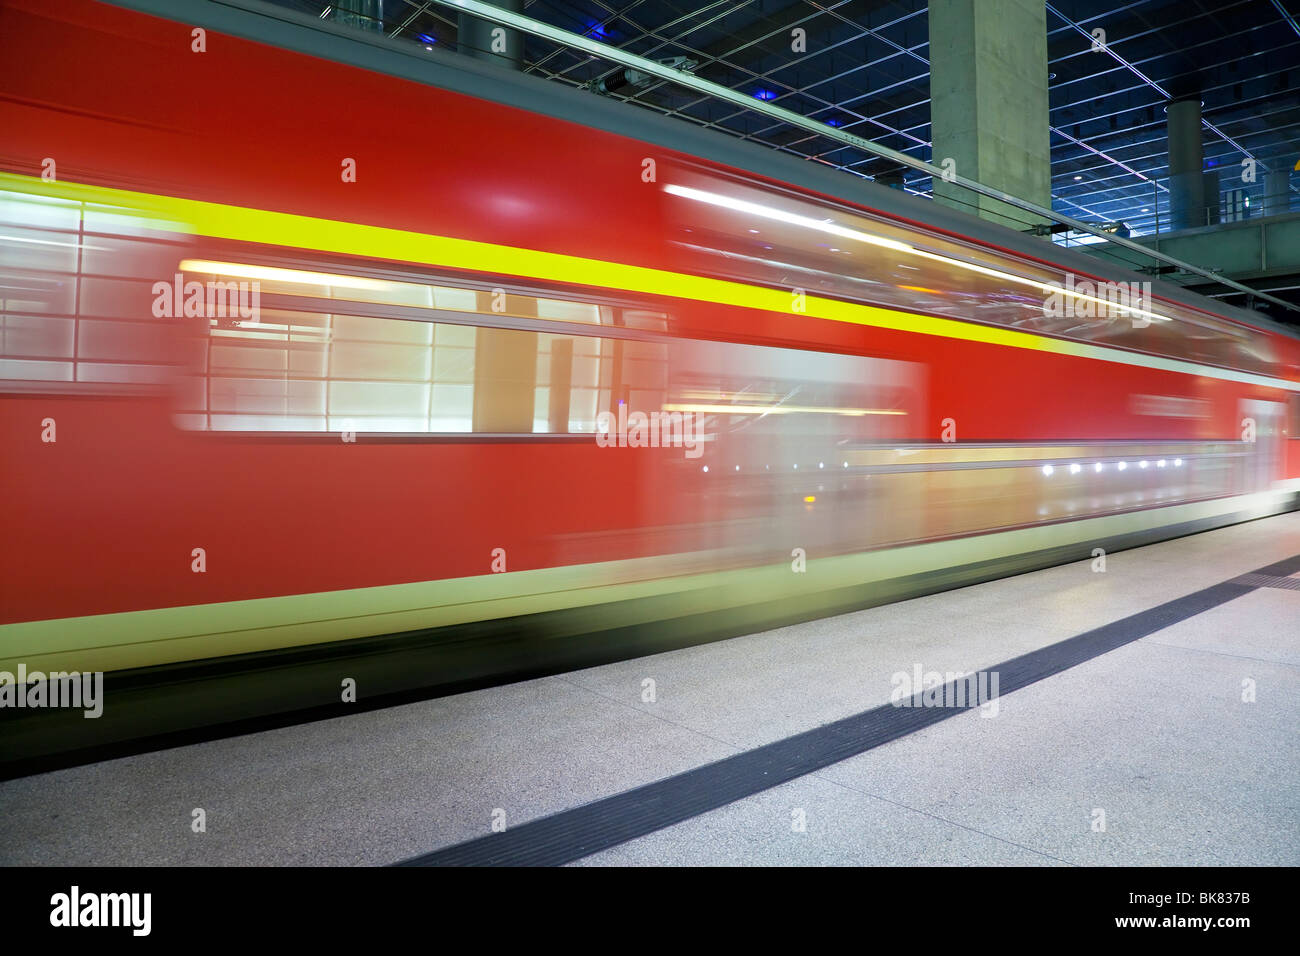 Europa, Deutschland, Berlin, moderne Bahnhof - Zug in den Bahnhof Ziehen verschieben Stockfoto